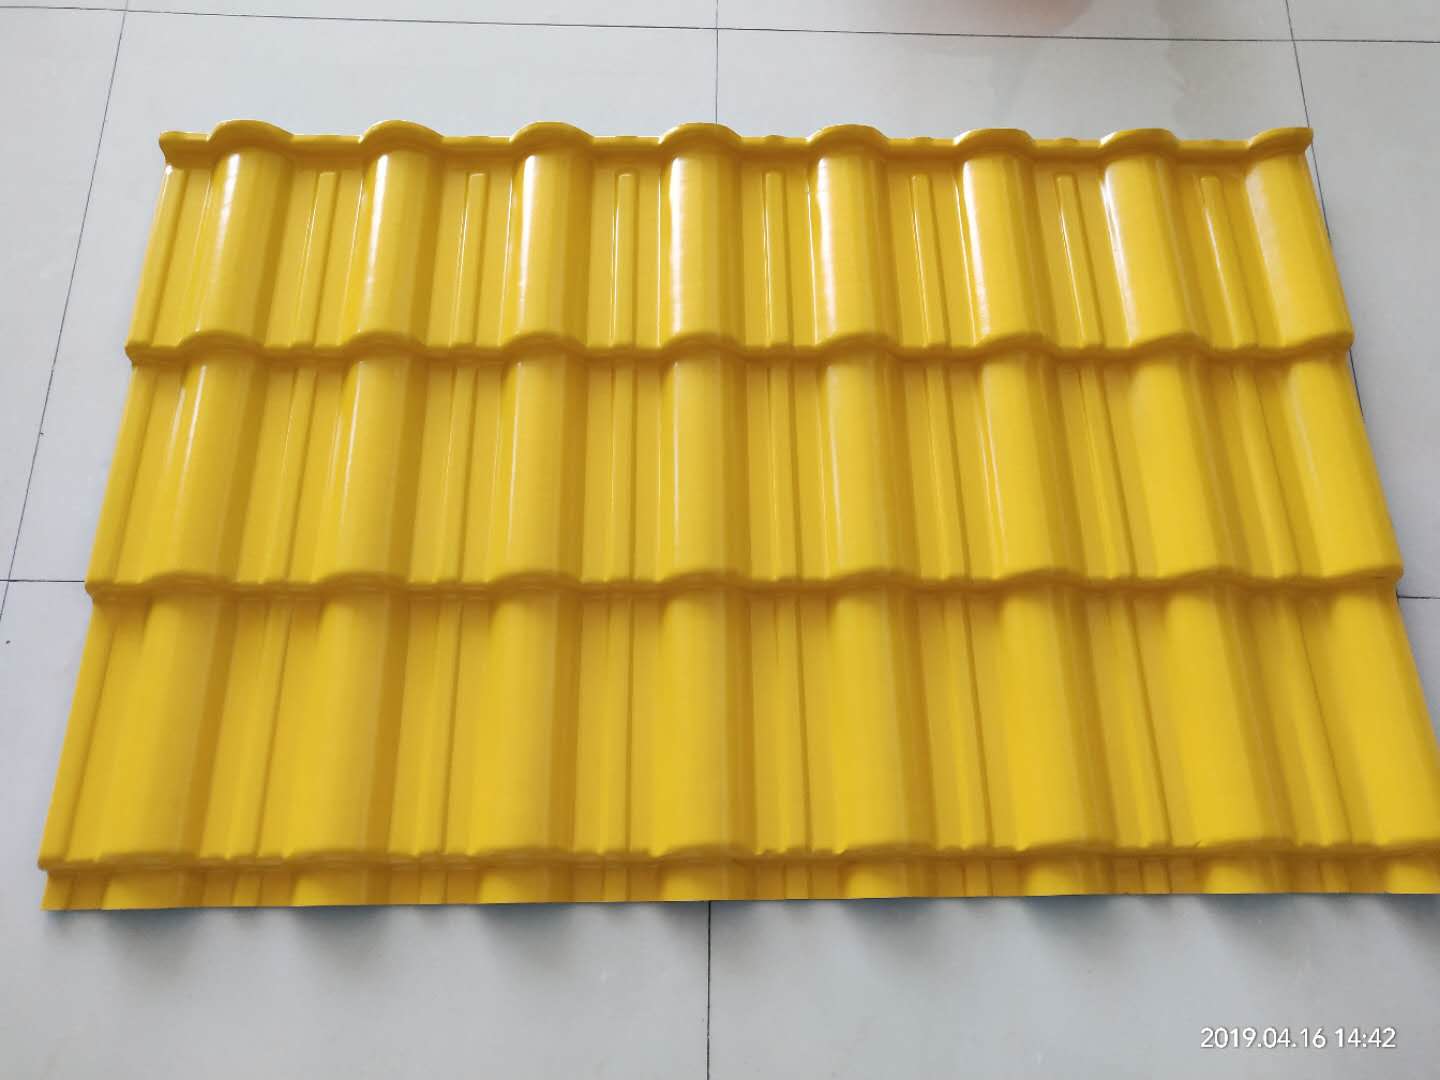 供应金黄色合成树脂琉璃瓦 横向订尺加工不浪费任意颜色